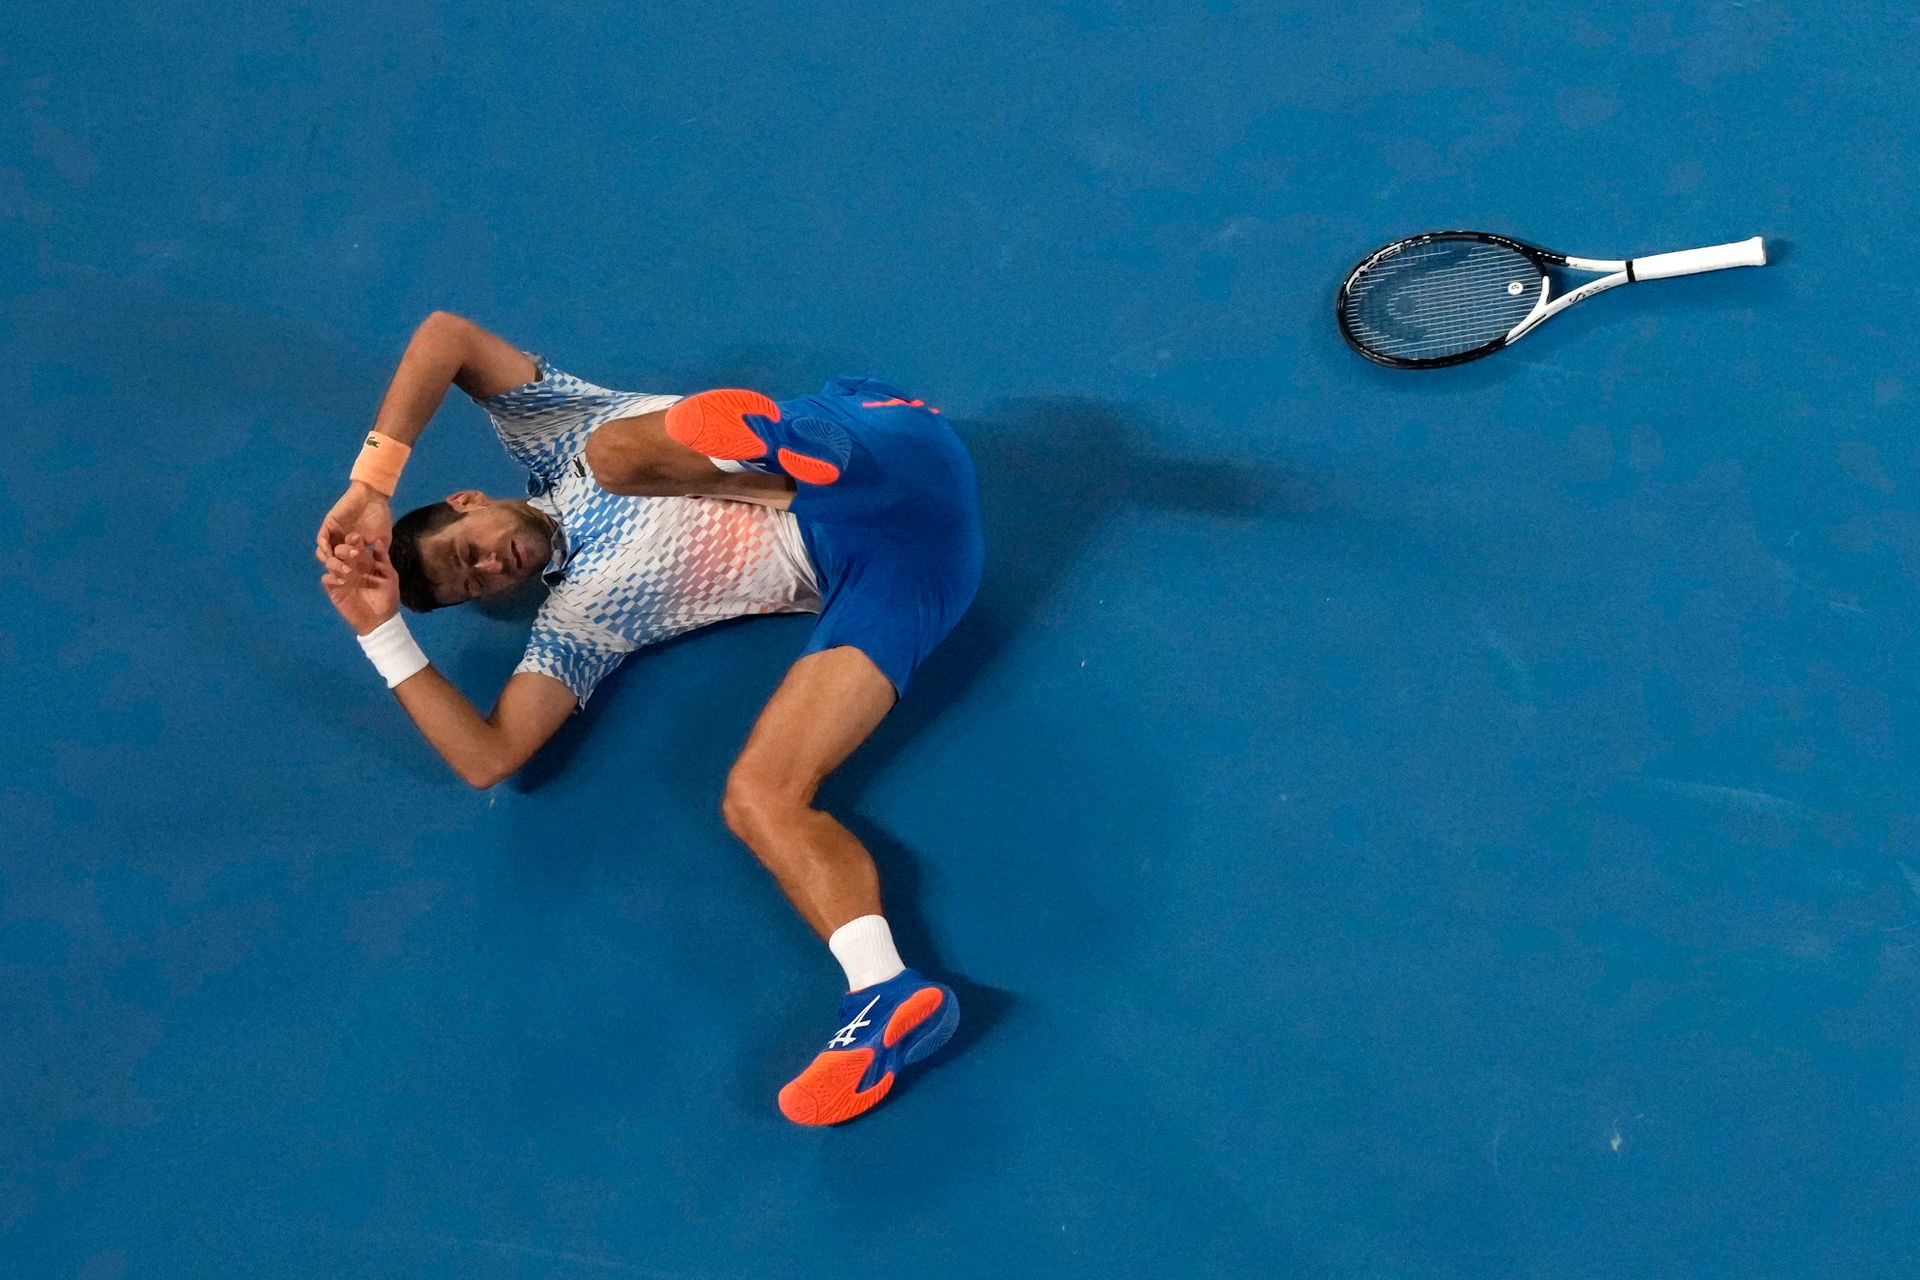 En mann med blå shorts og røde sko ligger på bakken, med beina i været og hendene over hodet, ved siden av en tennis-racket.